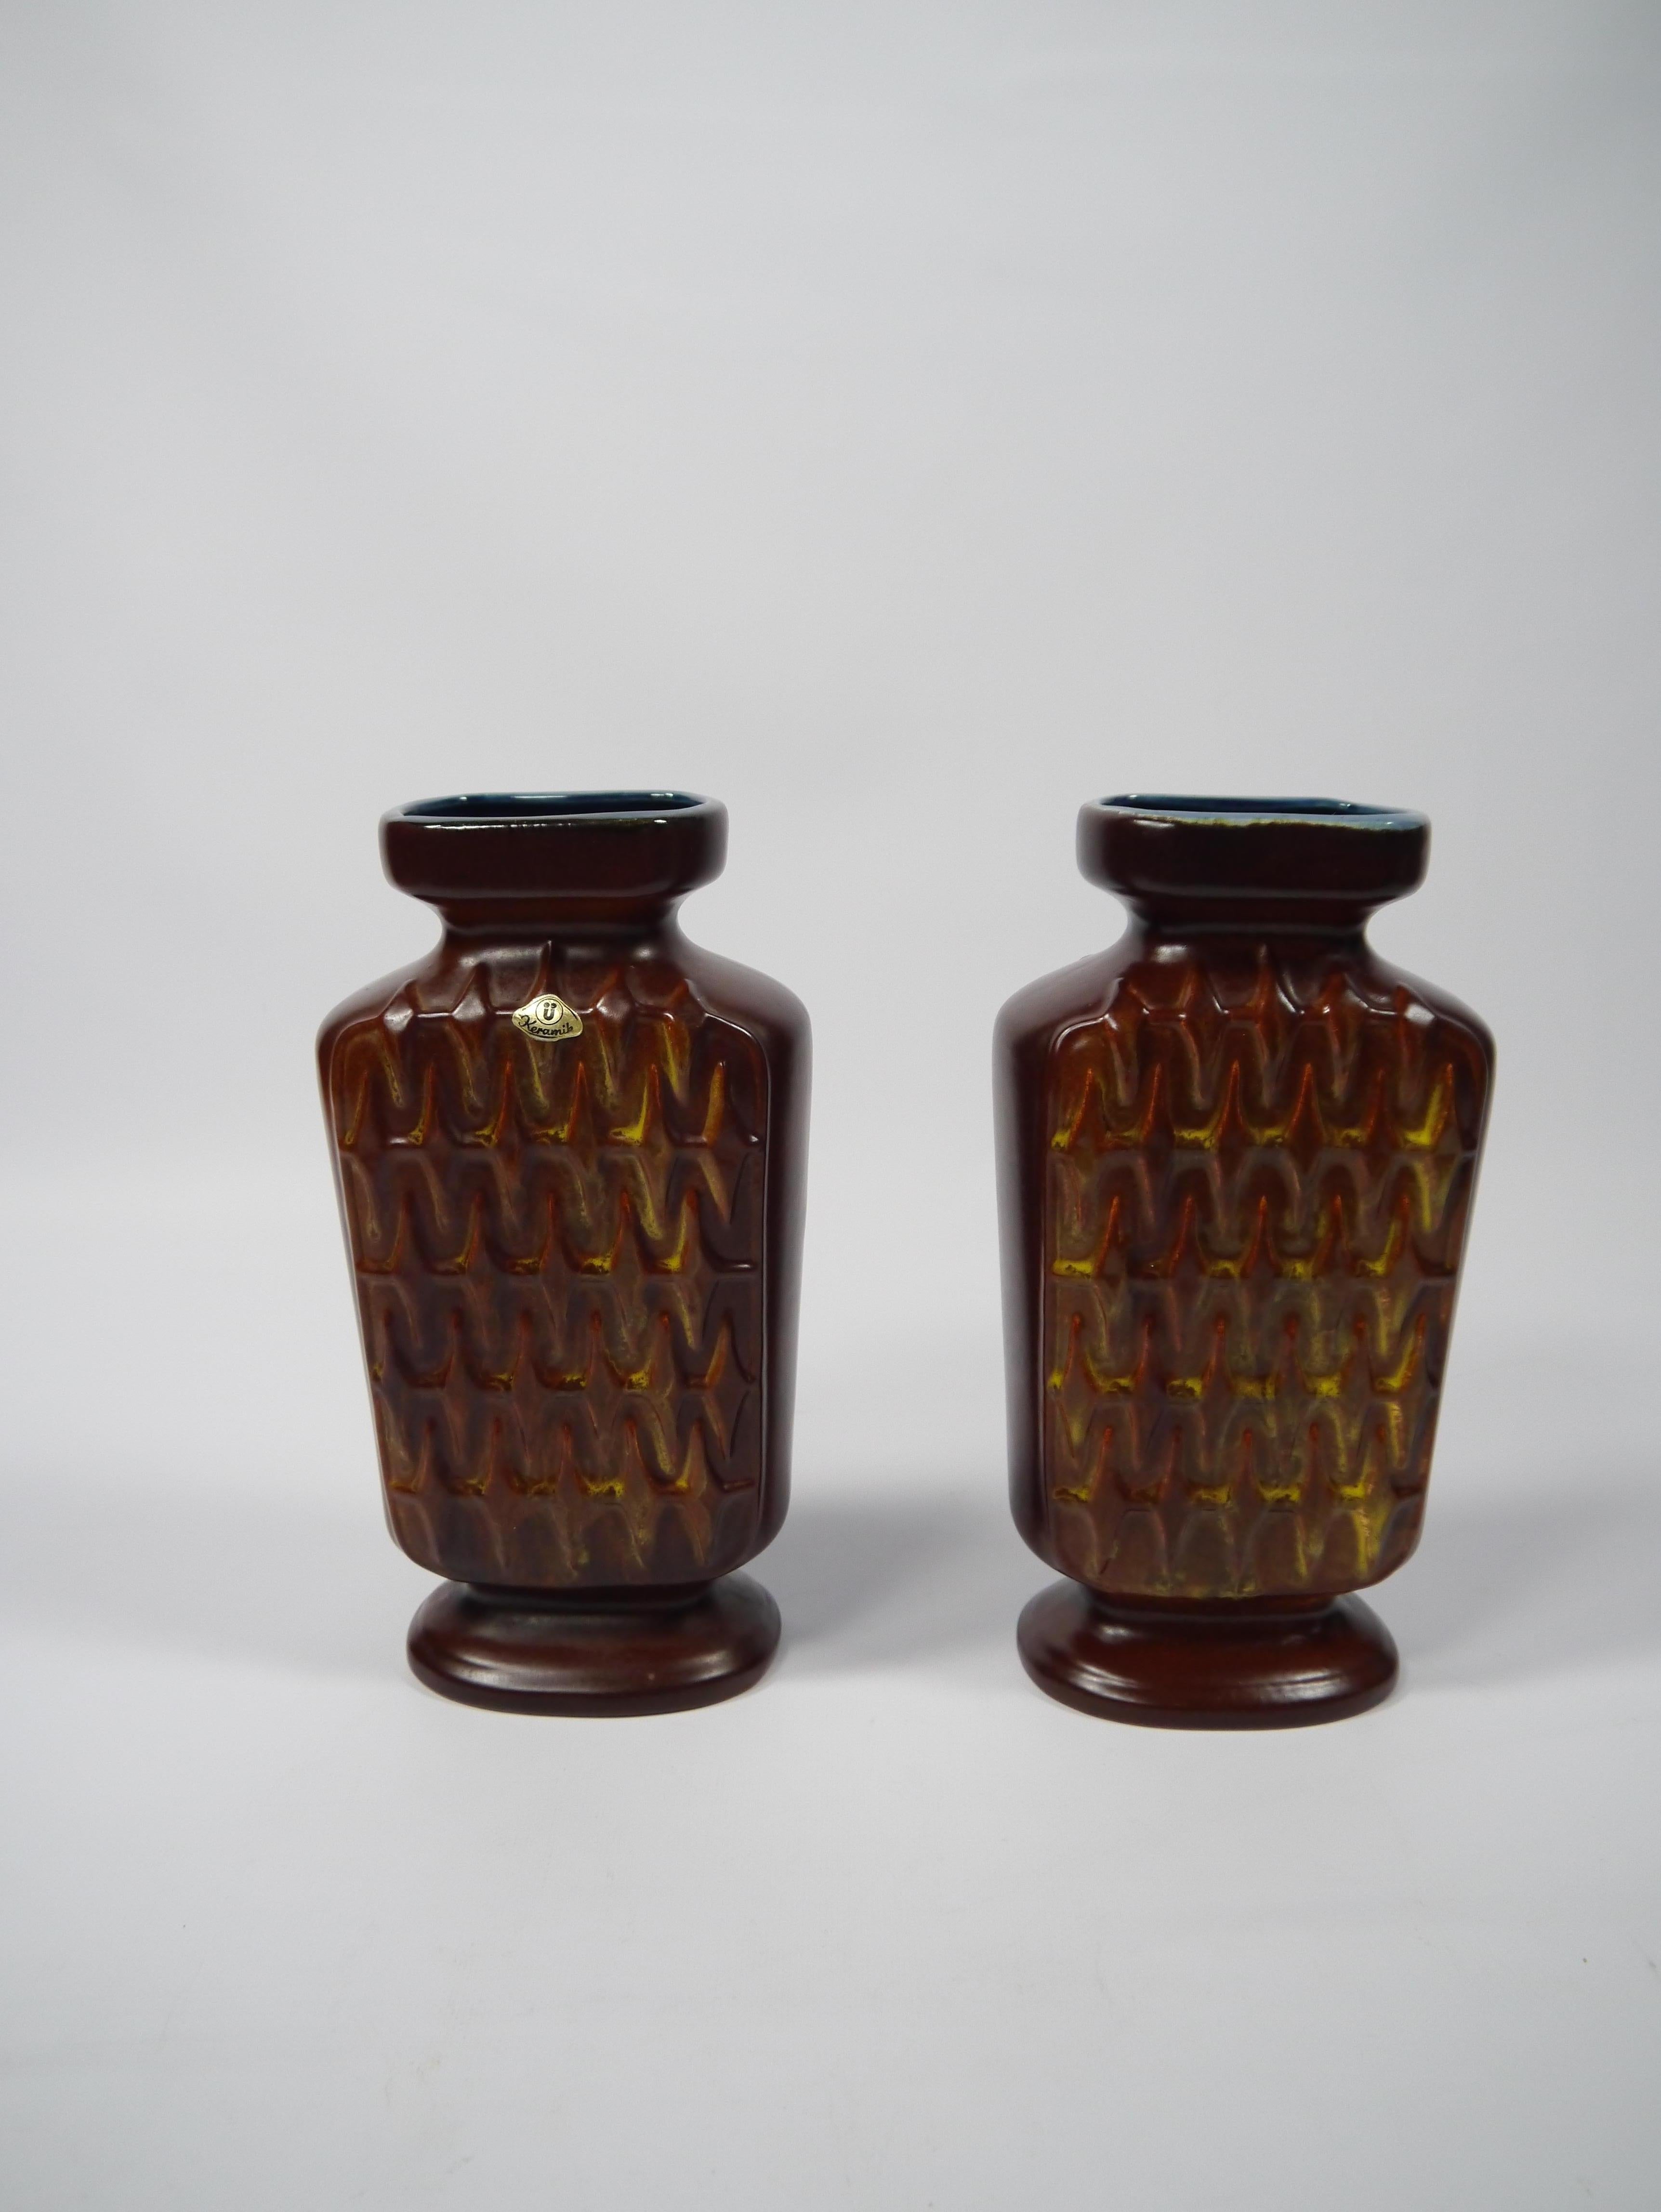 Paire de vases en céramique émaillée fabriqués par Üebelacker Keramik en Allemagne de l'Ouest dans les années 1950. Motif de vagues net et distinct, glaçure brun-rougeâtre avec des teintes jaunes/rouges/oranges rappelant les flammes dans le motif et